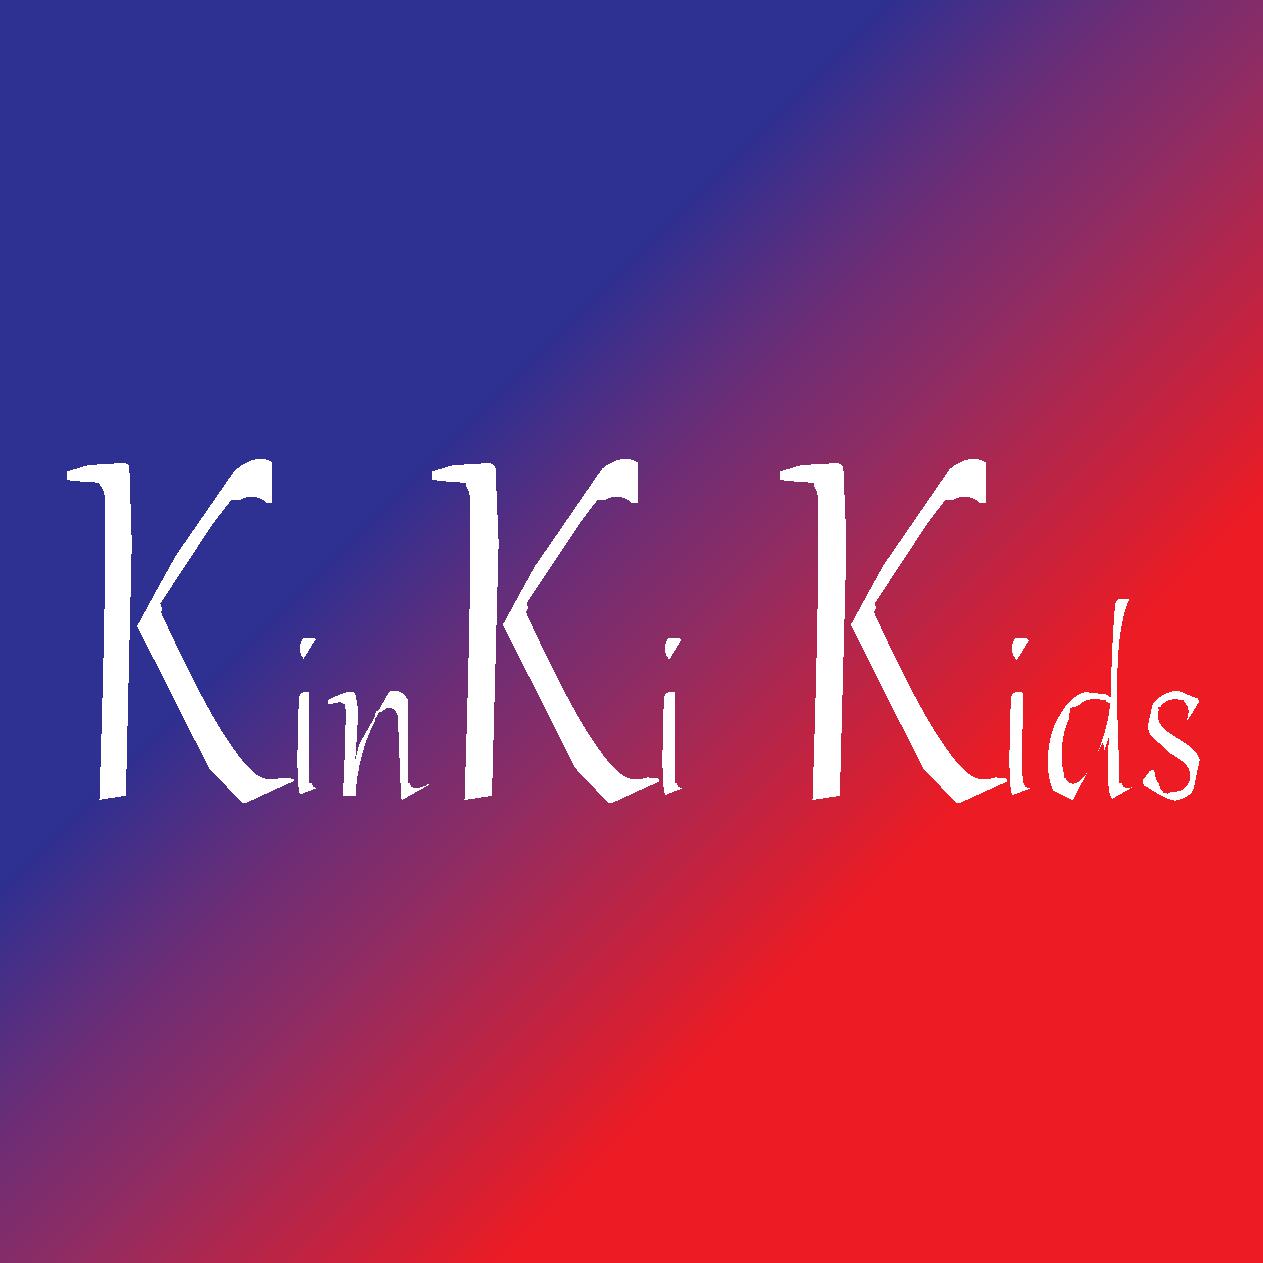 KinKi Kids堂本光一「トイレの隙に着てやった!」KAT-TUN上田竜也のライブ会場で堂々といたずら